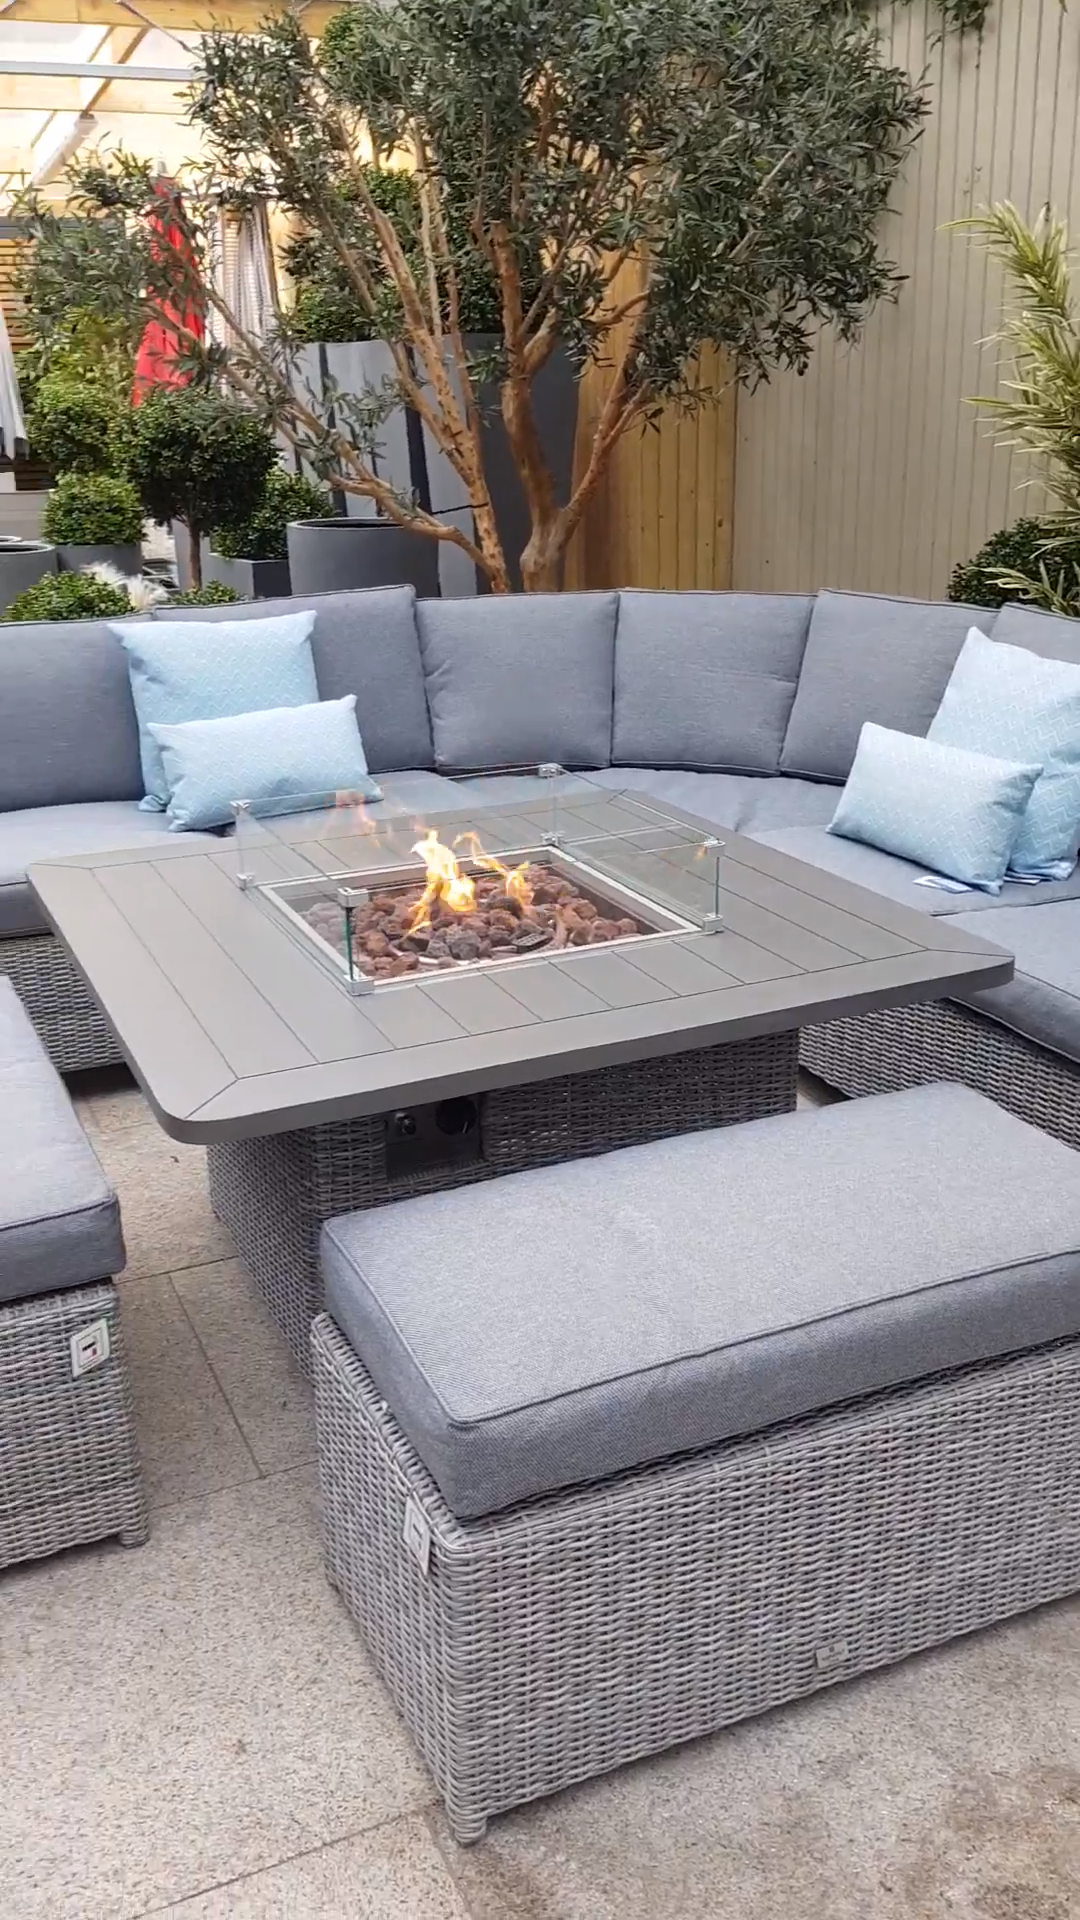 Garden furniture with fire pit -   14 garden design patio ideas